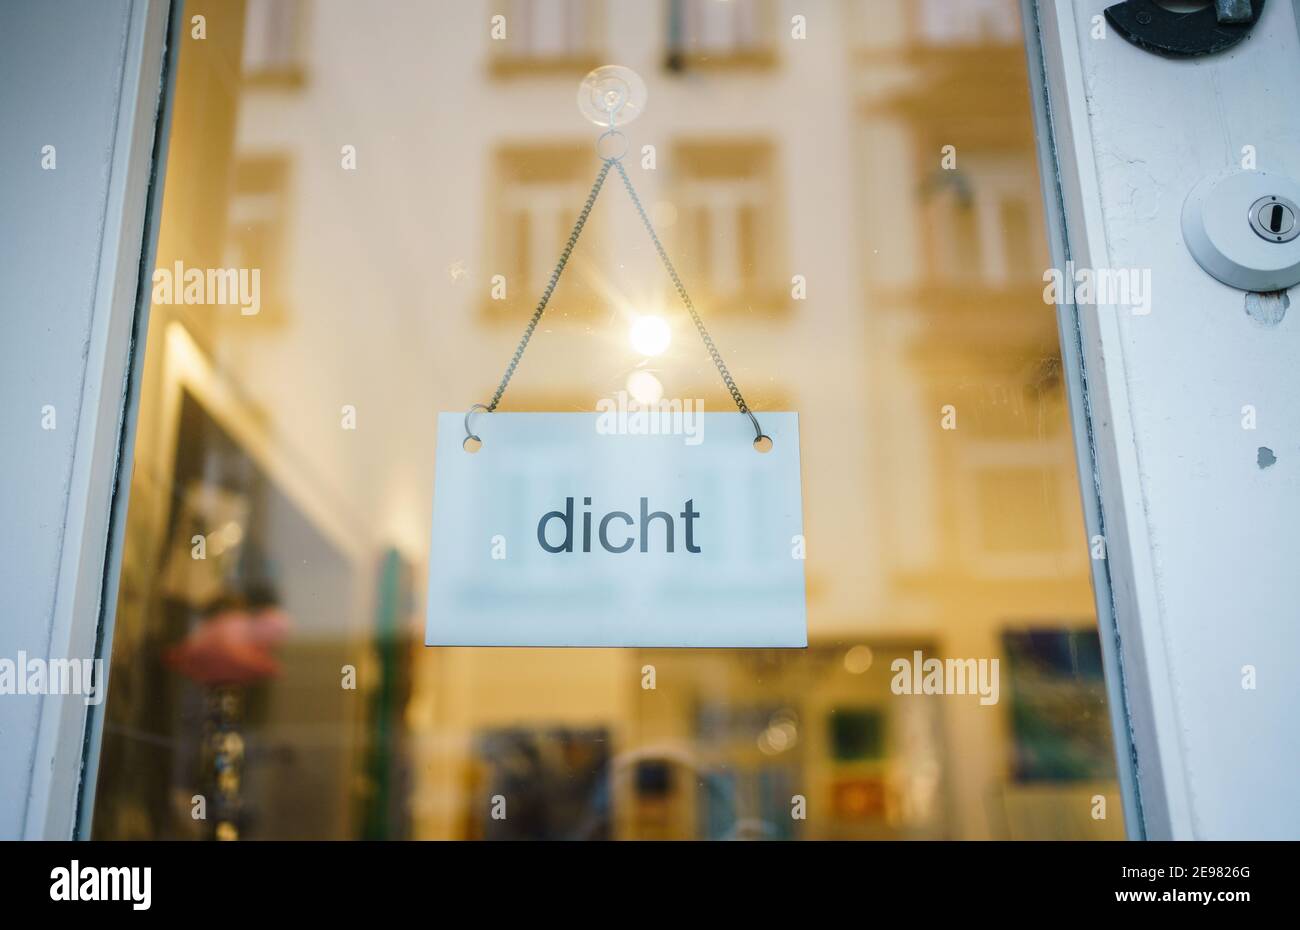 03 febbraio 2021, Hessen, Francoforte sul meno: Solo la parola 'dicht' è scritta sulla porta d'ingresso di una galleria chiusa a causa dell'attuale blocco nel quartiere di sachsenhausen. Foto: Frank Rumpenhorst/dpa Foto Stock